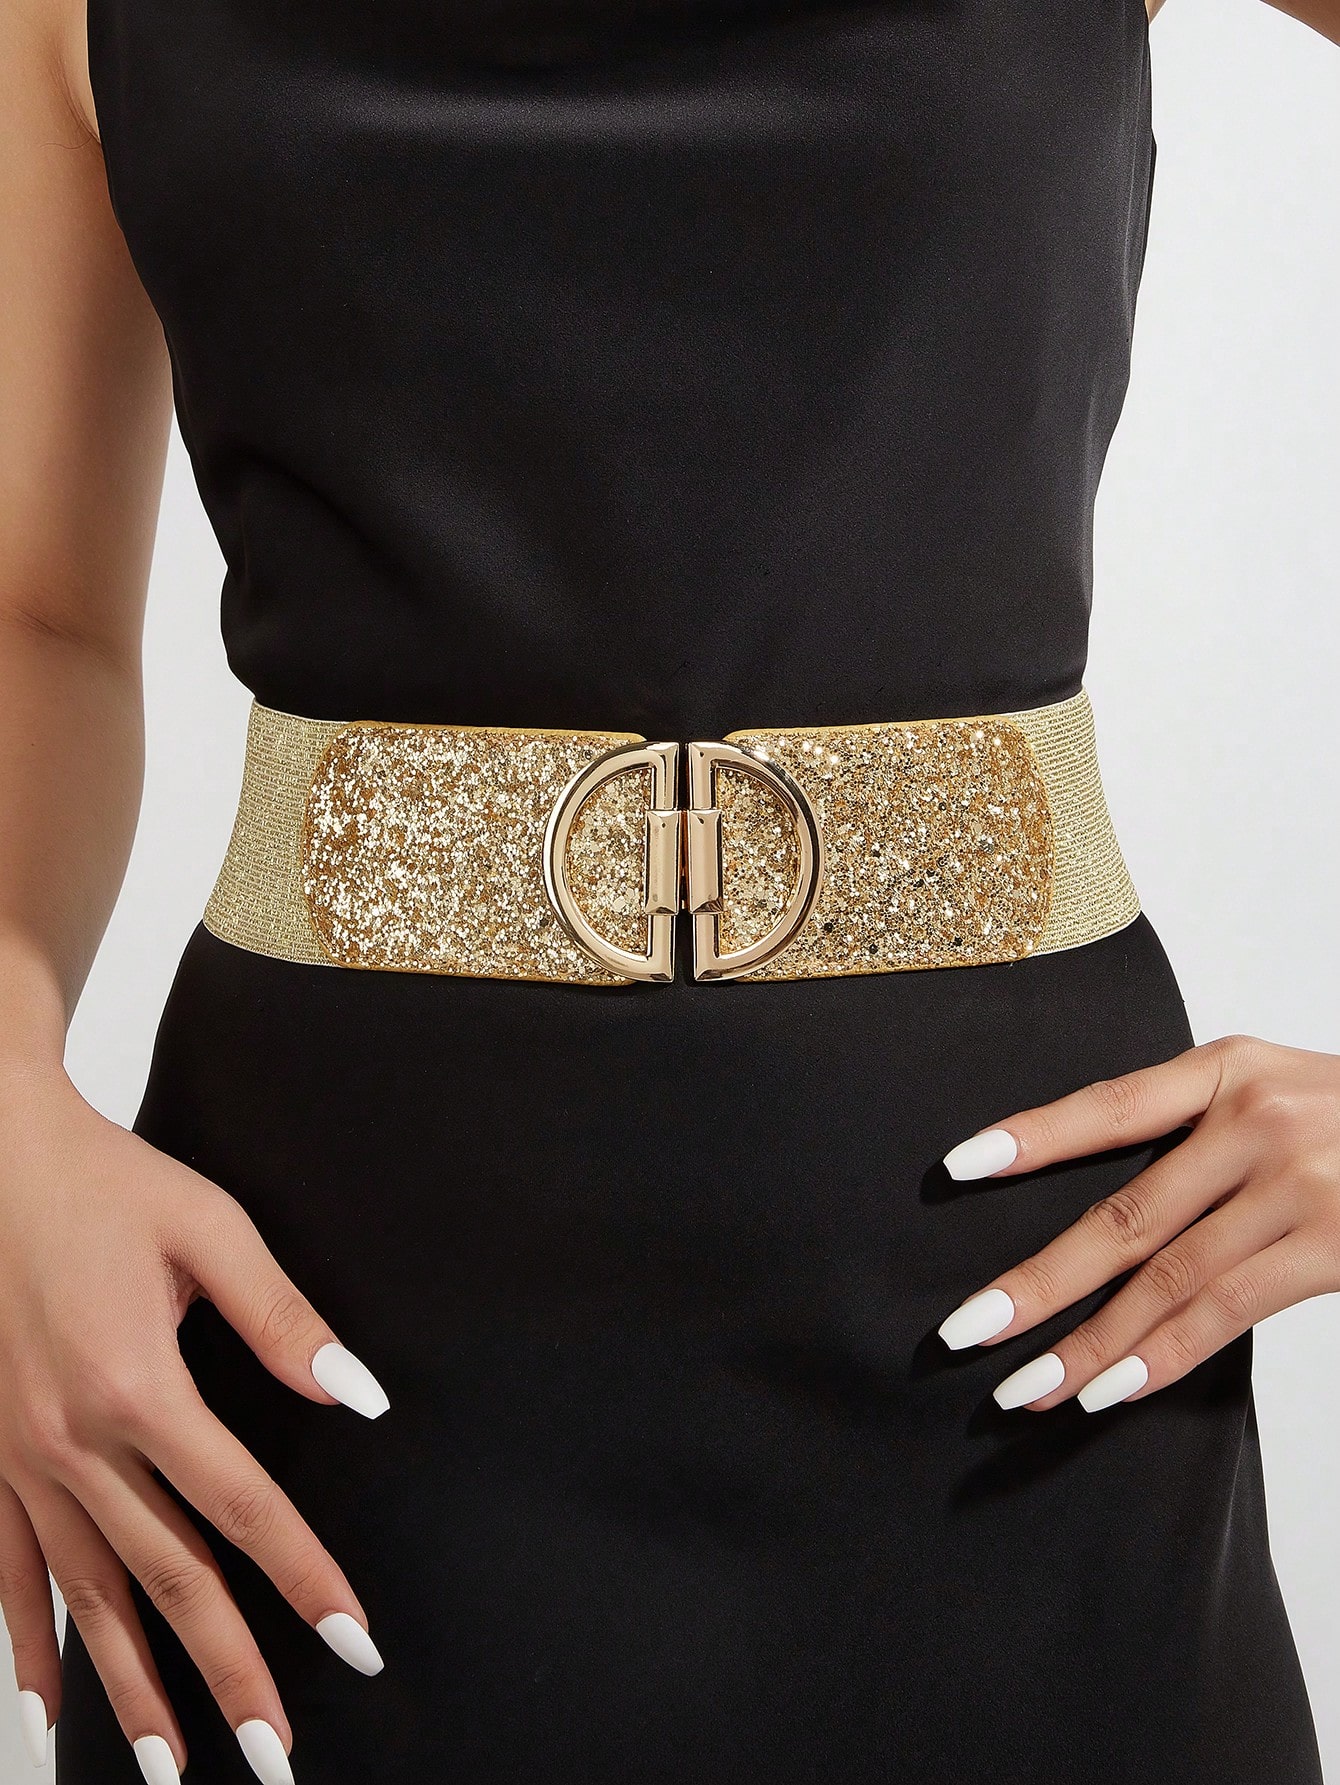 1 шт. женское блестящее платье из искусственной кожи с золотистой пряжкой D и эластичным поясом, золото